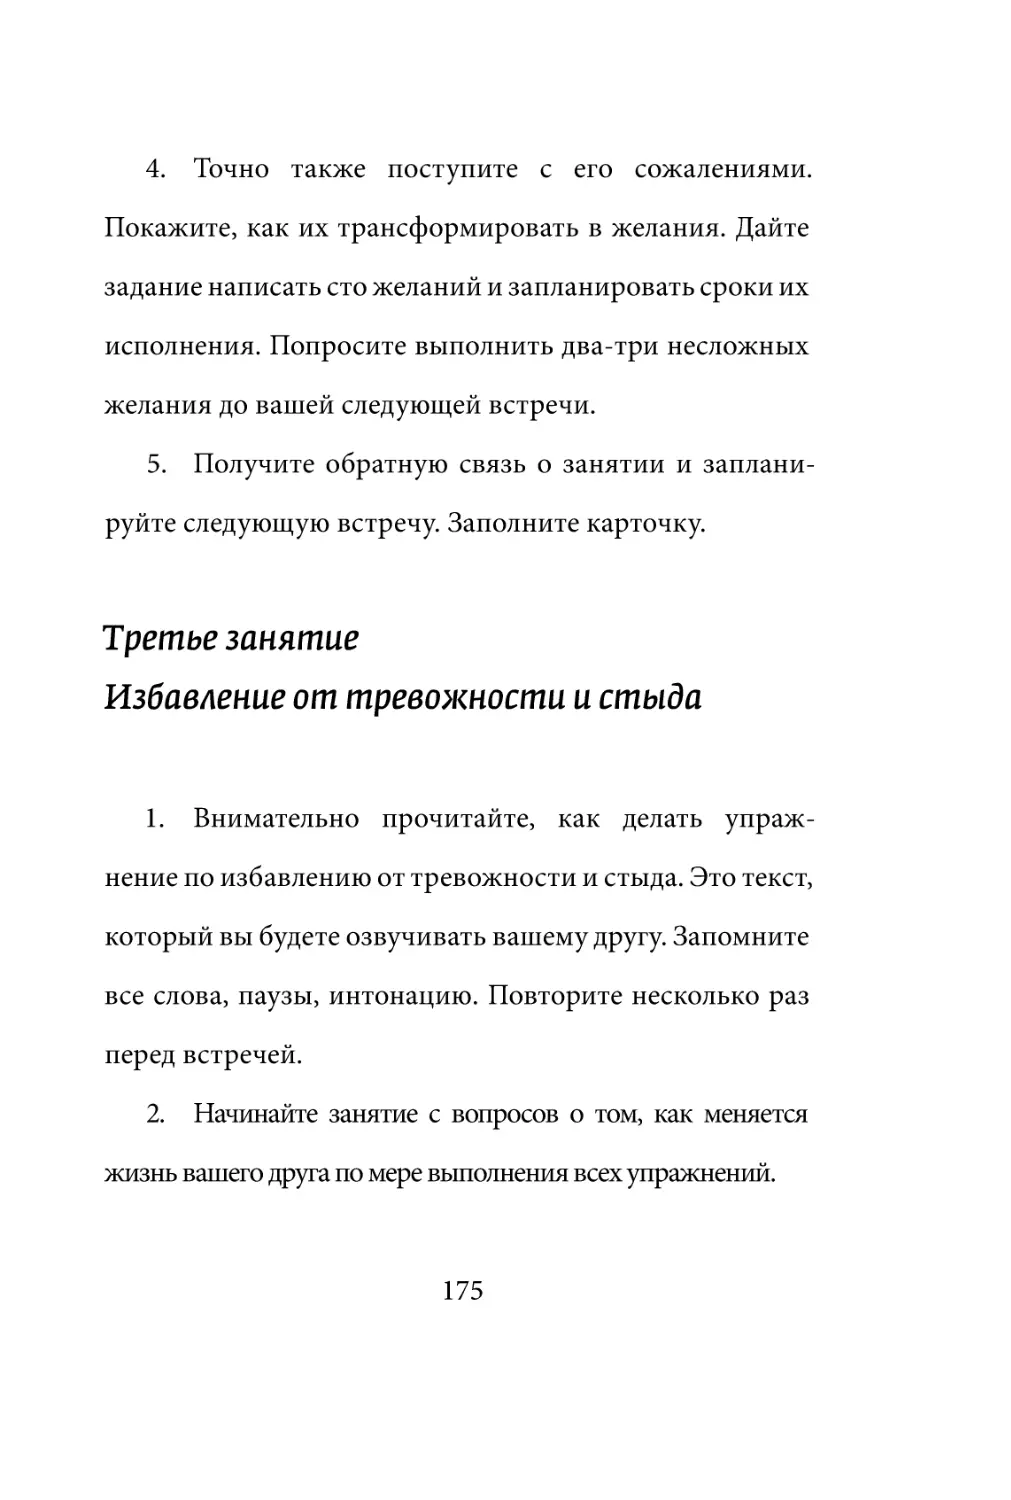 Sergey_Filippov_Dnevnik_samorazvitia_Evolyutsia_Vnutrennego_Sostoyania_175.pdf (p.175)